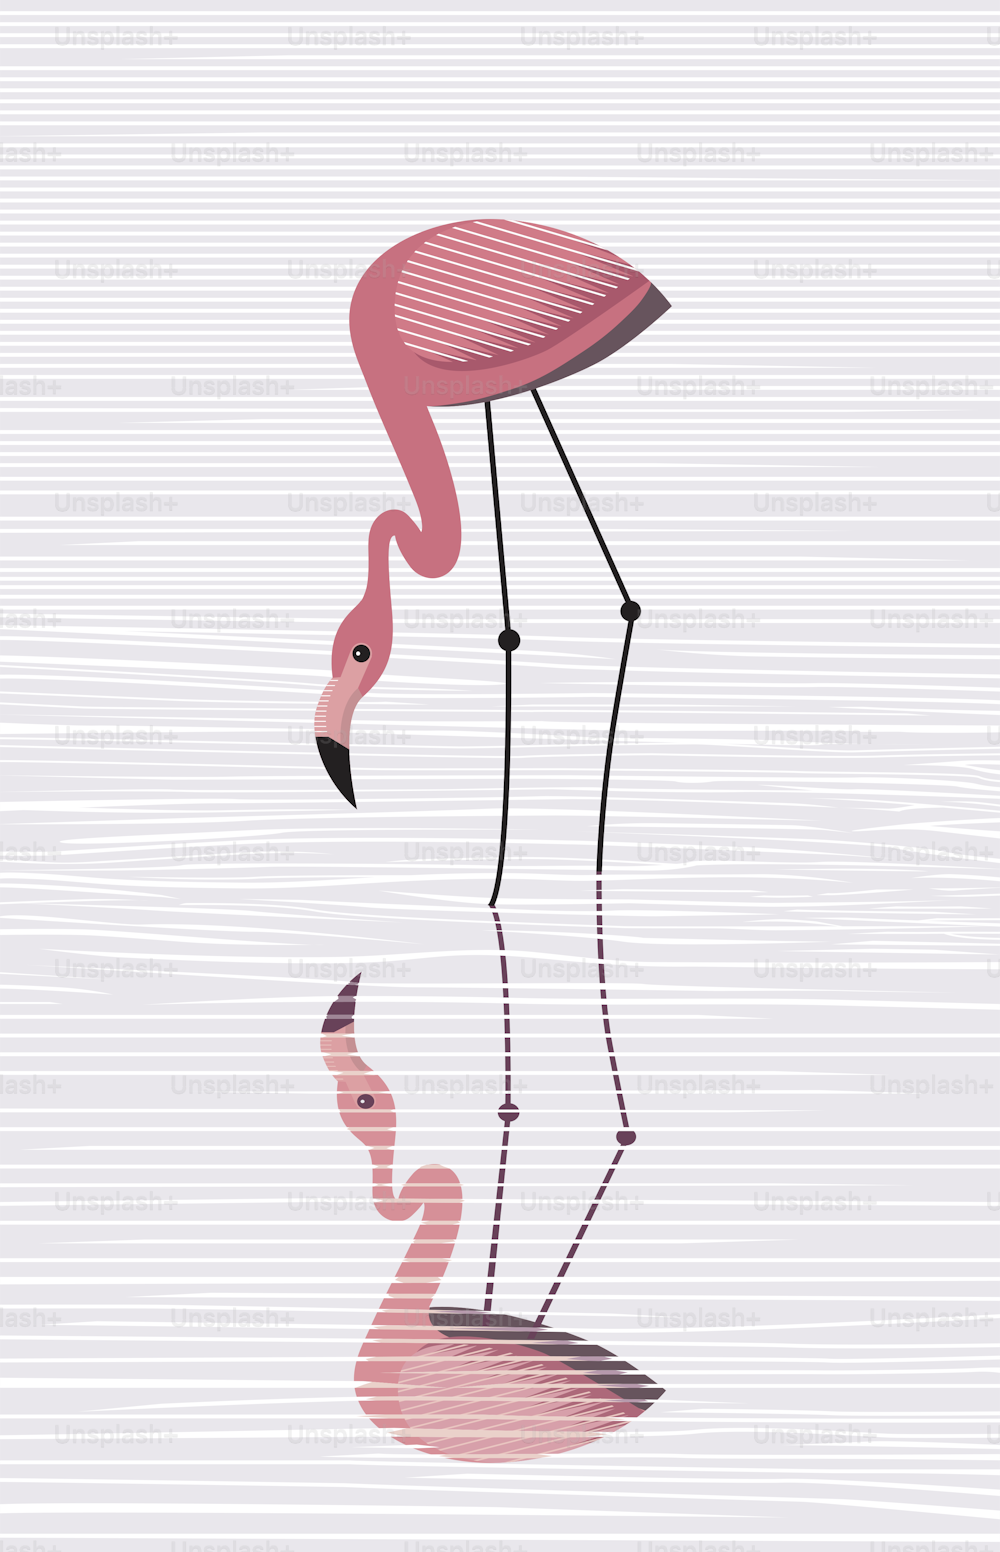 El flamenco rosa elegante se refleja en el agua, vector, imagen minimalista